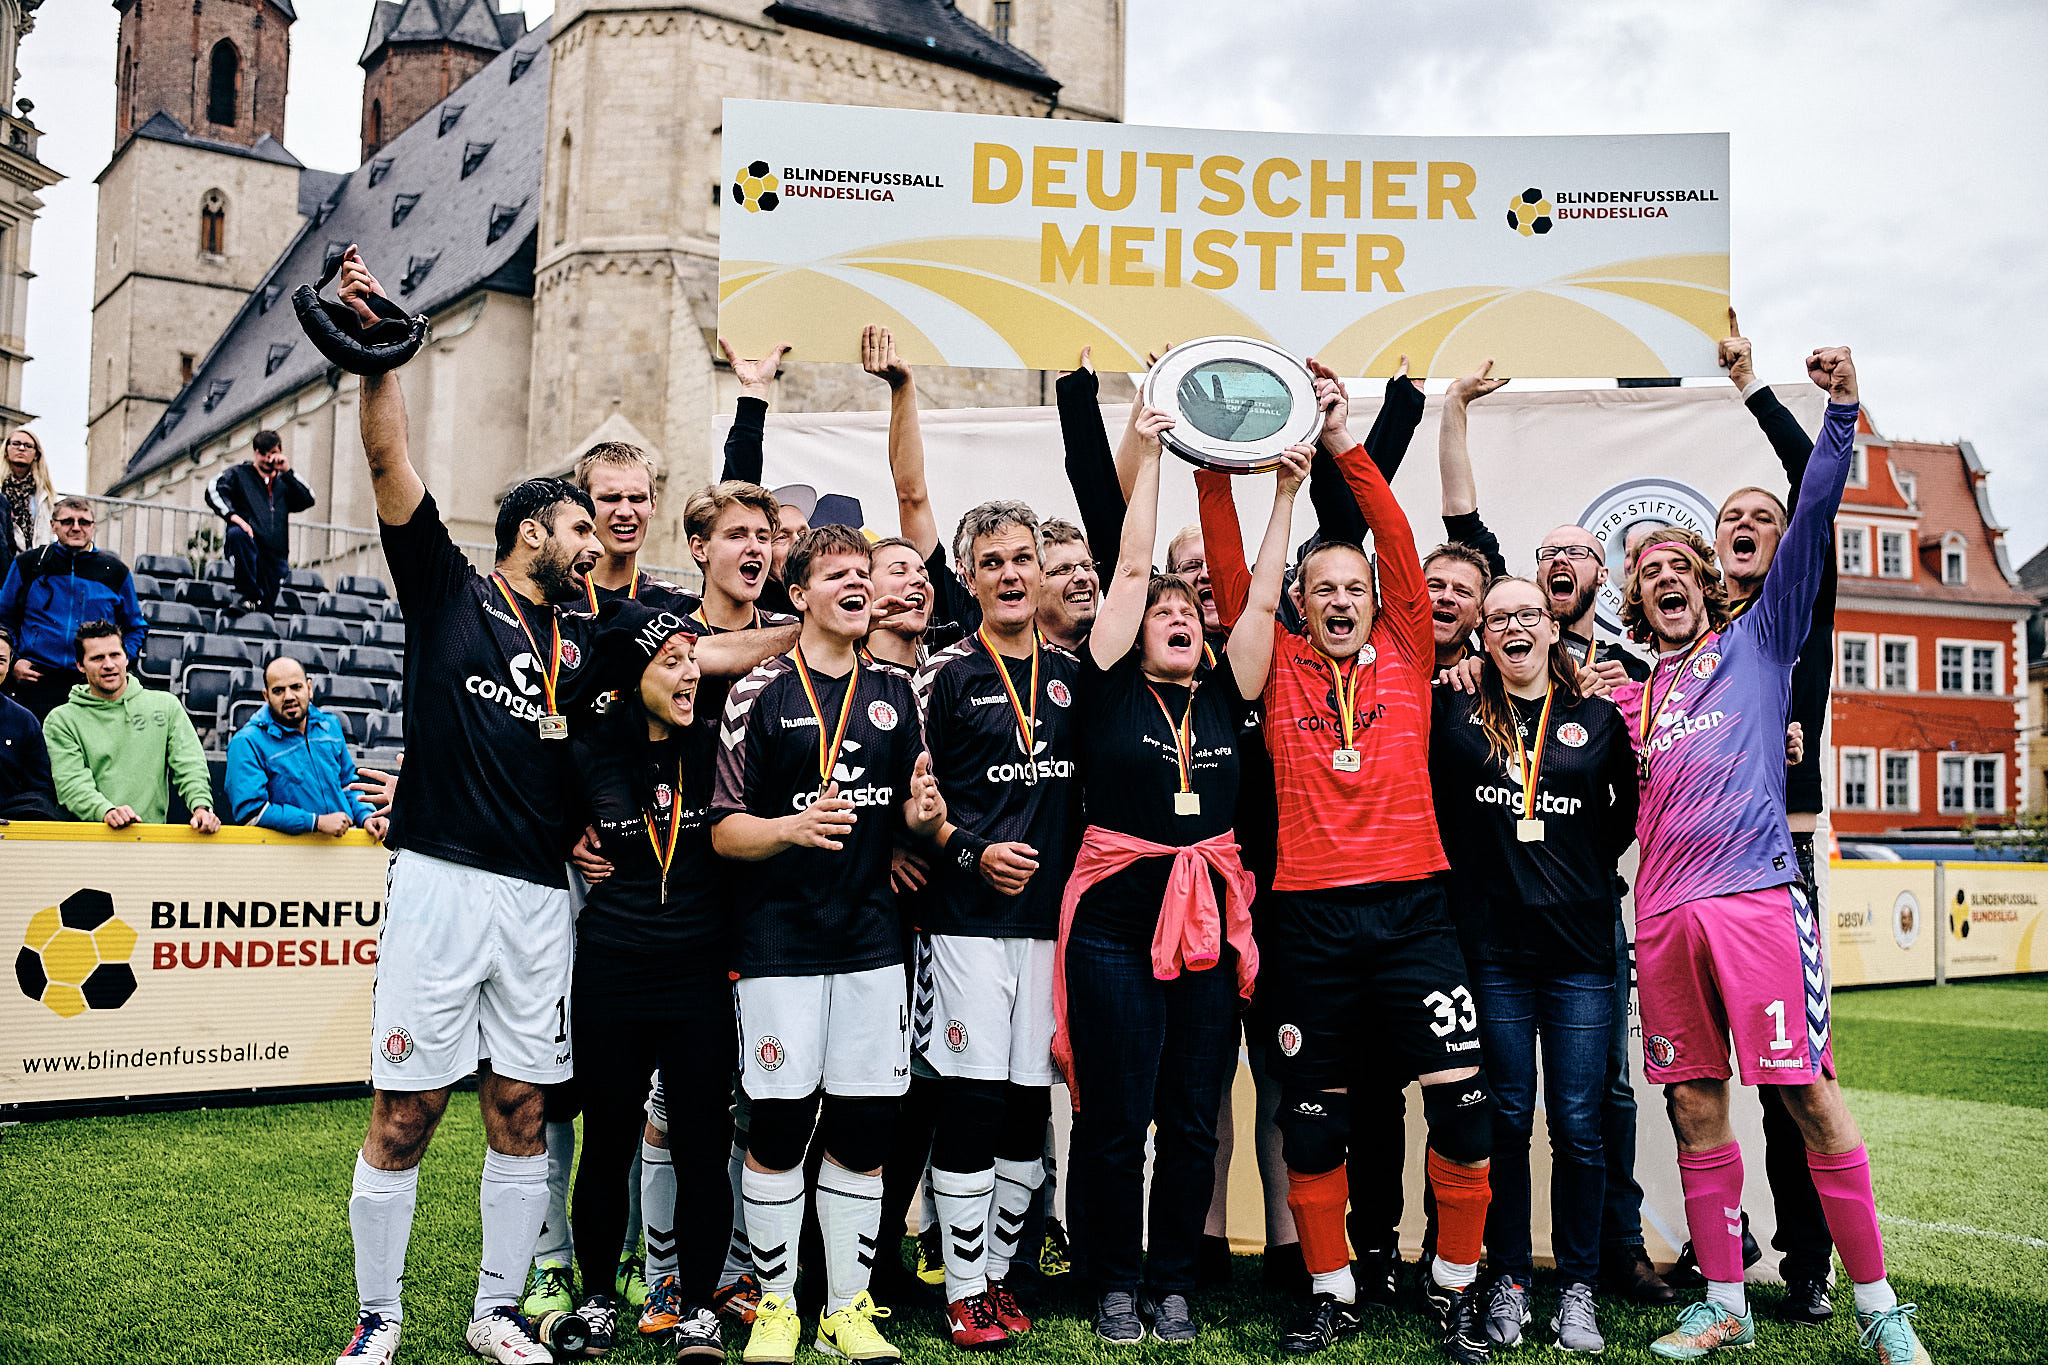 9. September 2017: Unsere Blindenfußballer feiern in Halle (Saale) den Gewinn der Deutschen Meisterschaft.